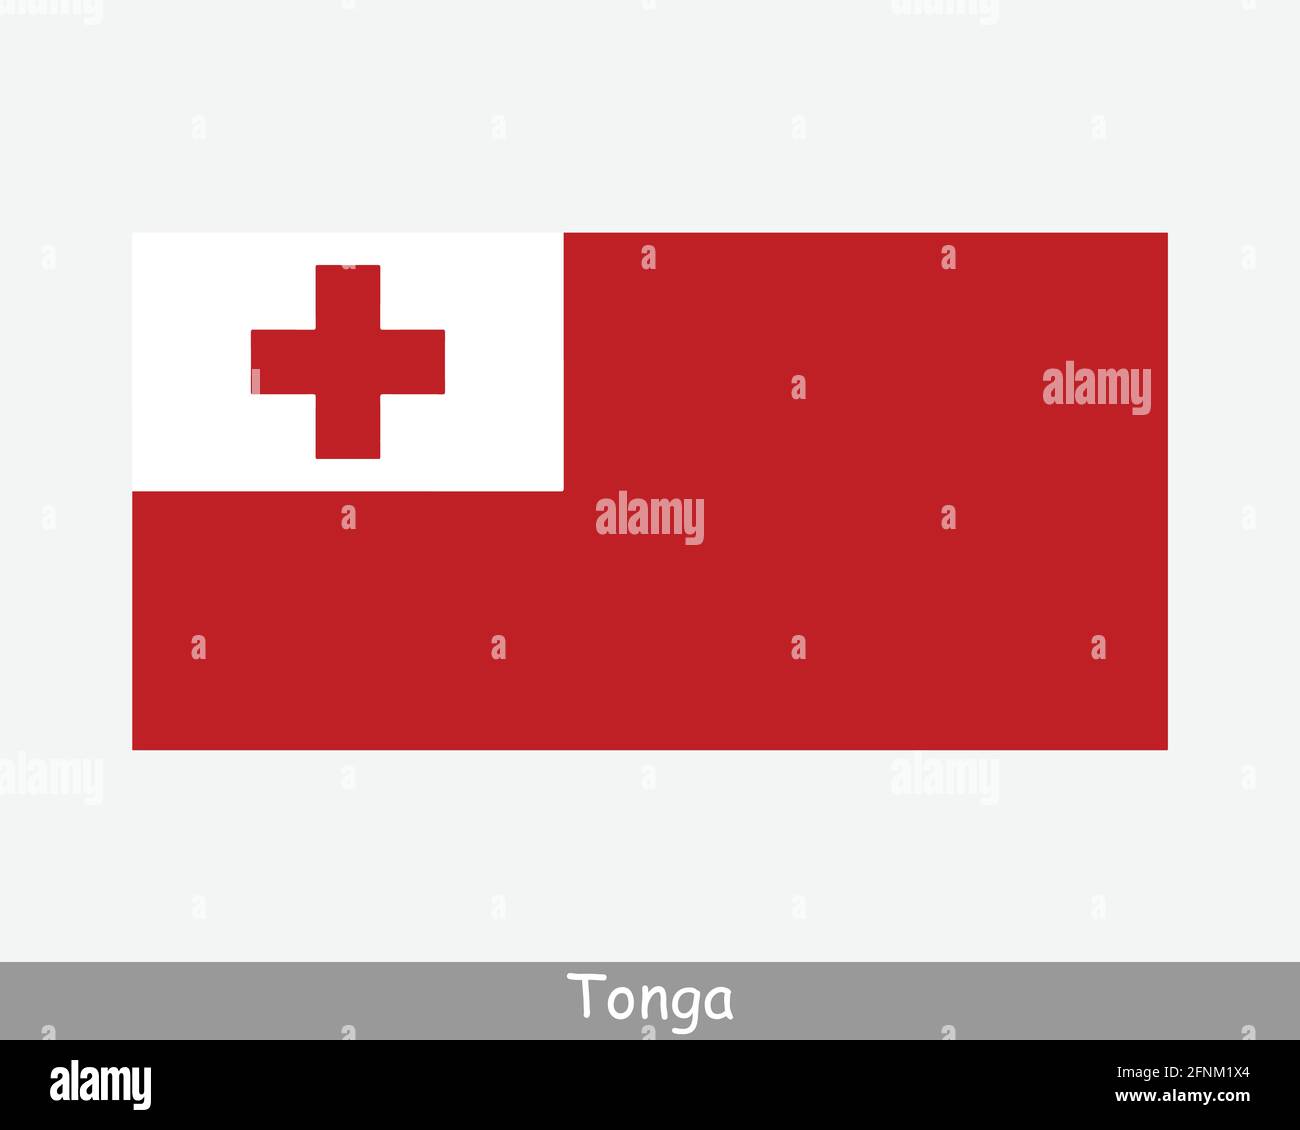 Nationalflagge von Tonga. Flagge Des Tongan-Landes. Ausführliches Banner des Königreichs Tonga. EPS-Vektorgrafik Datei ausschneiden Stock Vektor